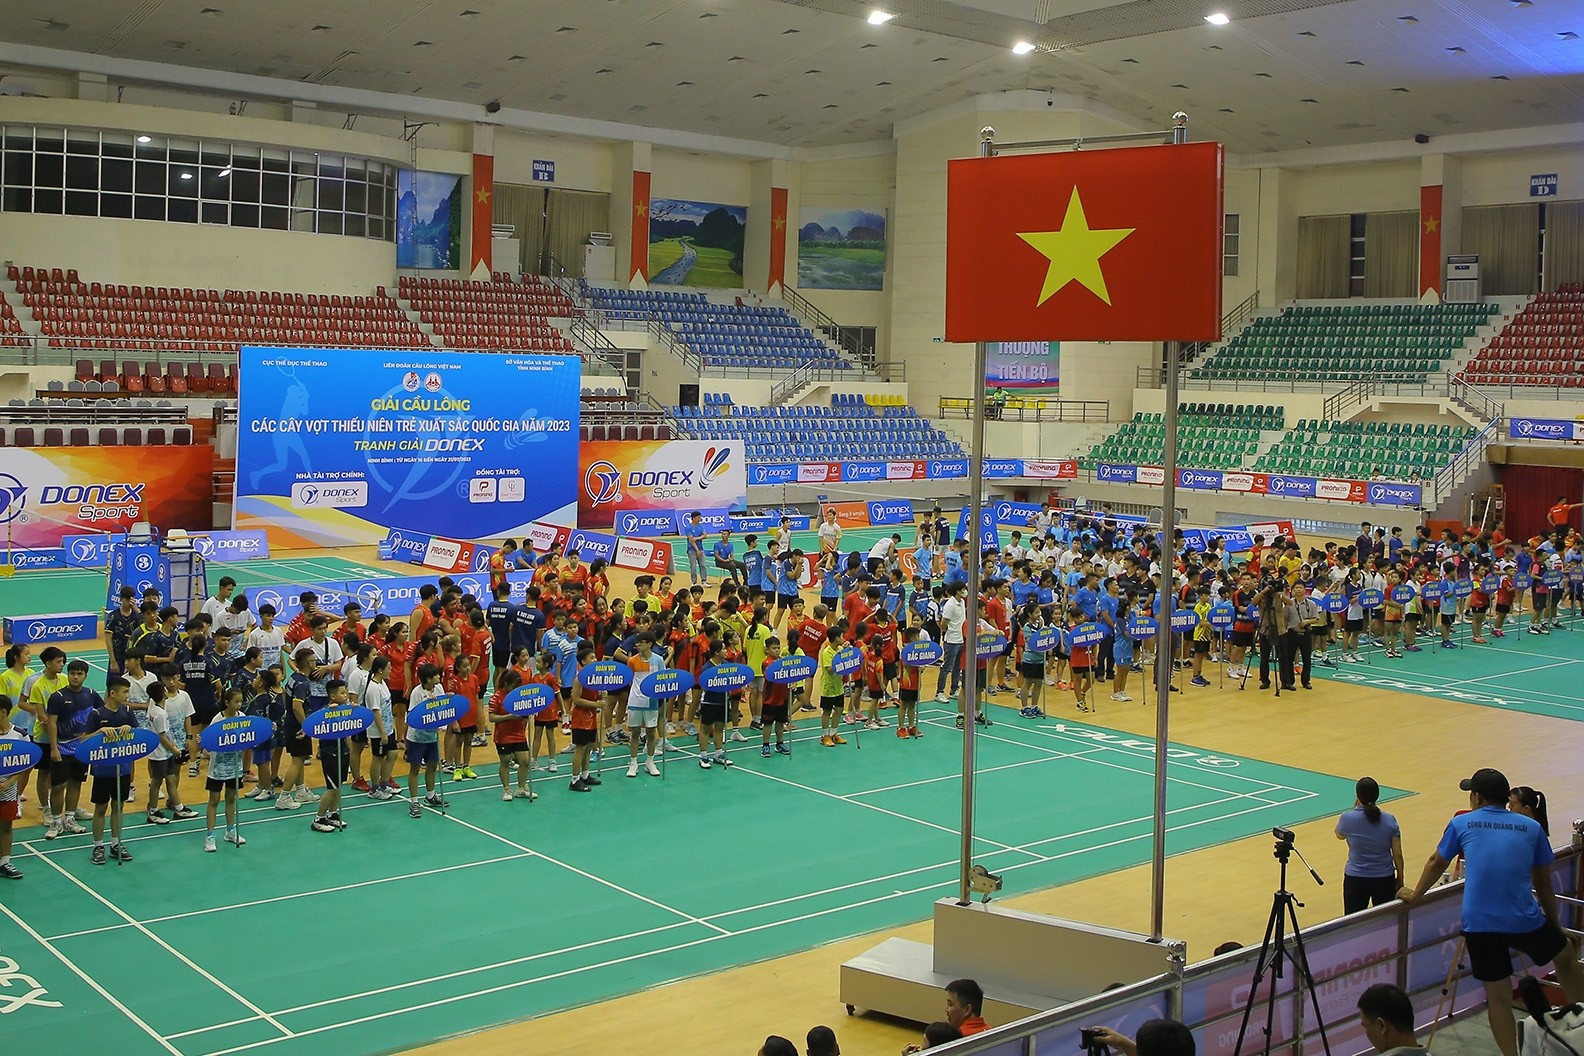 Gần 400 VĐV dự giải cầu lông các cây vợt thiếu niên, trẻ xuất sắc quốc gia